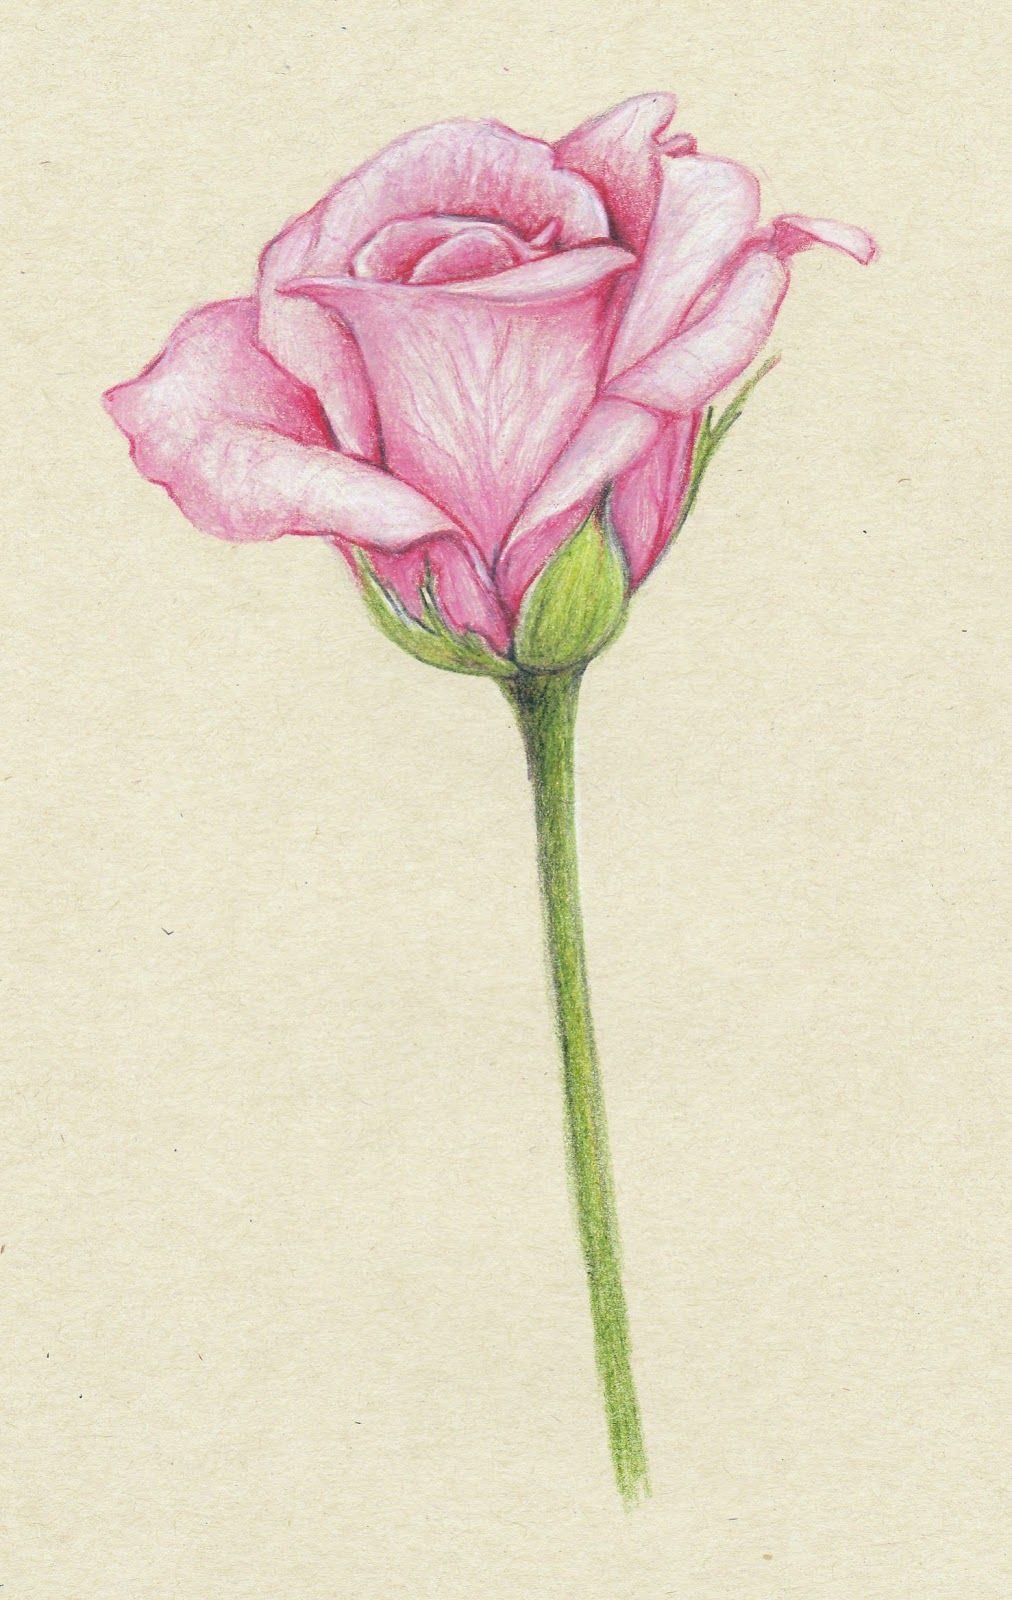 Tranh vẽ hoa hồng bằng bút chì đẹp nhất